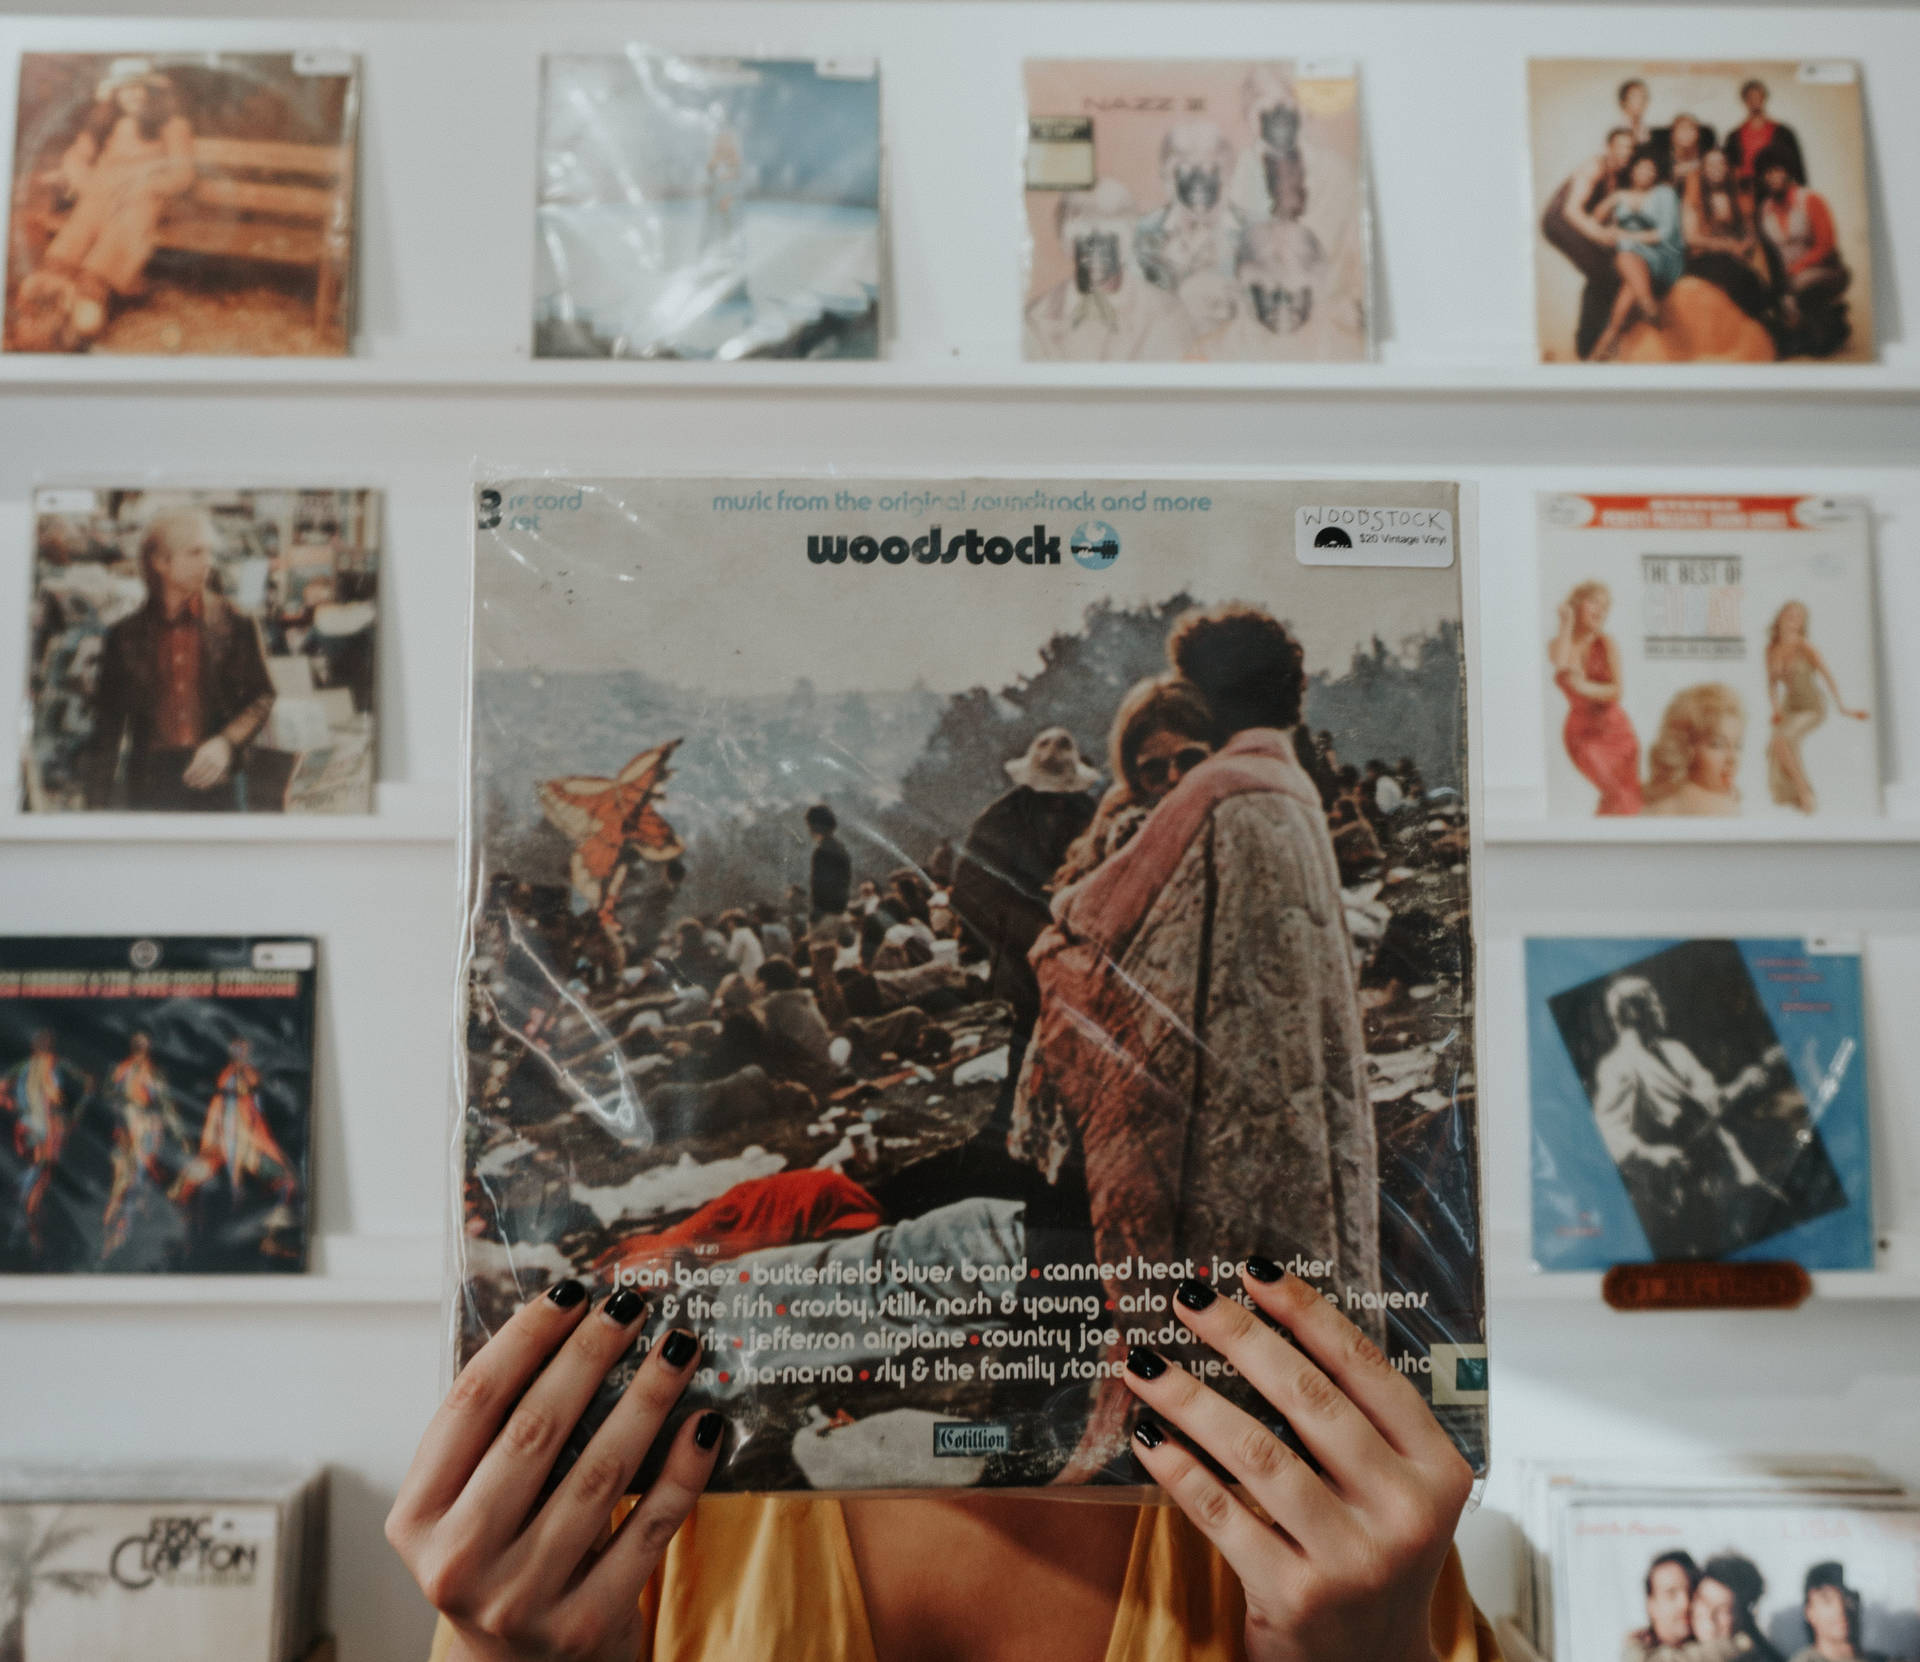 Woodstock Vinyl Record Background